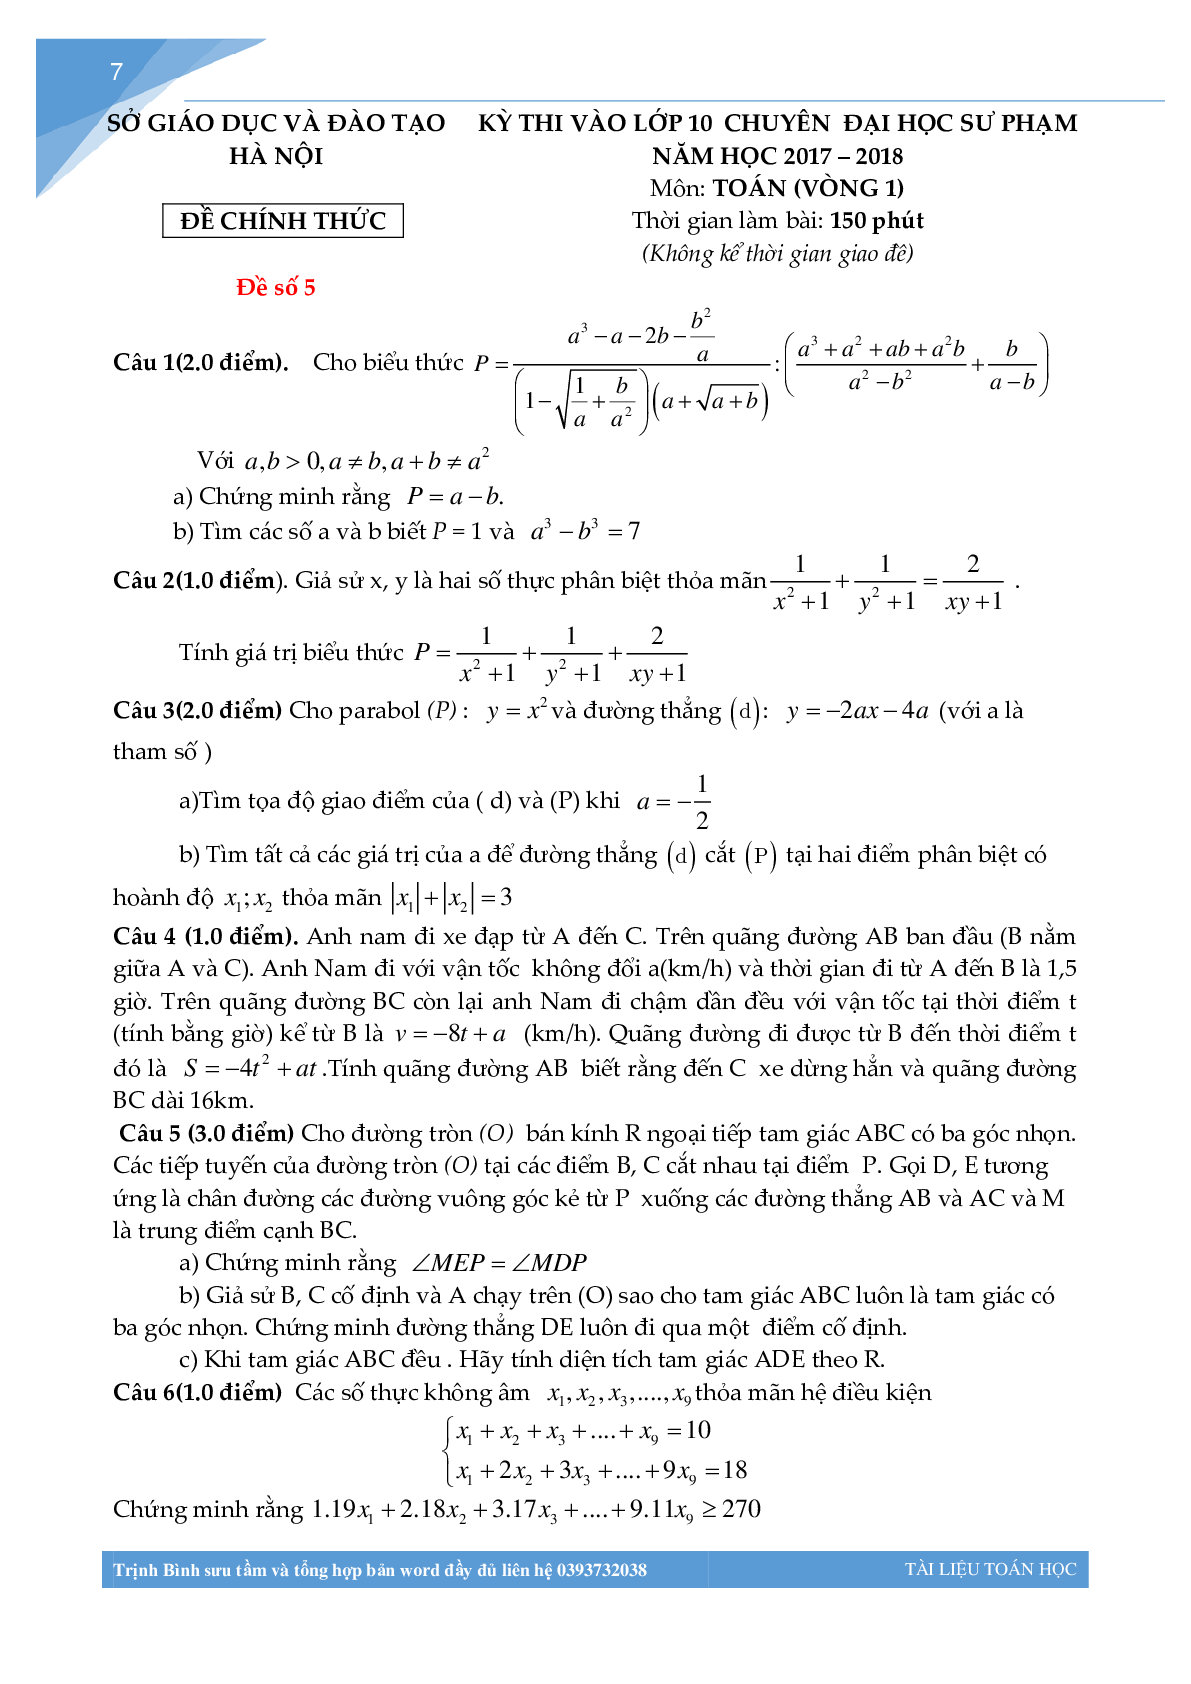 Bộ đề thi toán vào lớp 10 chuyên đại học sư phạm Hà Nội (trang 6)